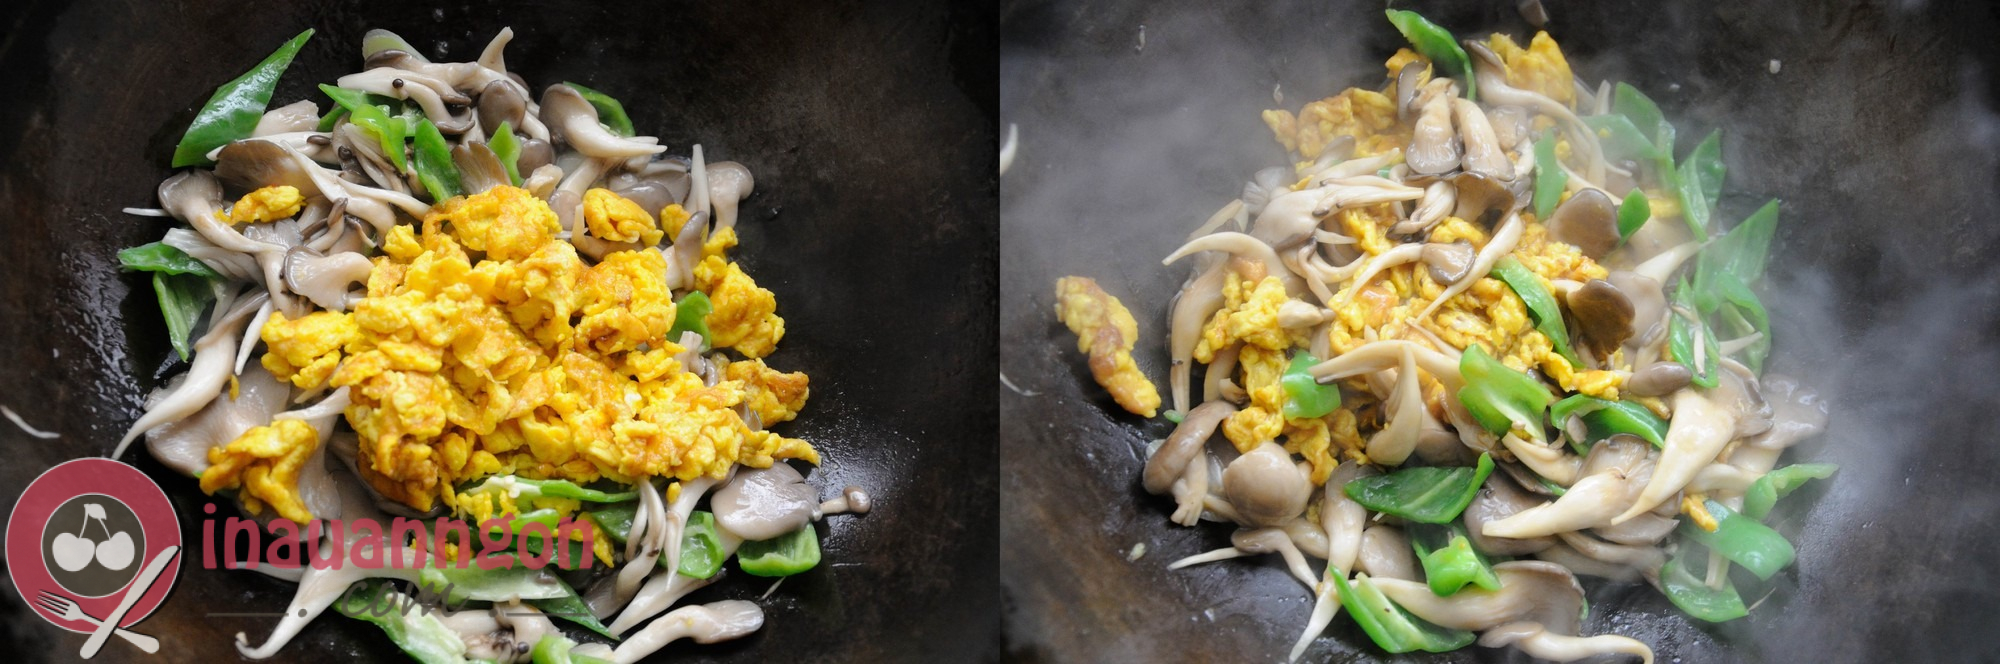 Xào nấm hải sản với trứng và nêm nếm cho vừa ăn